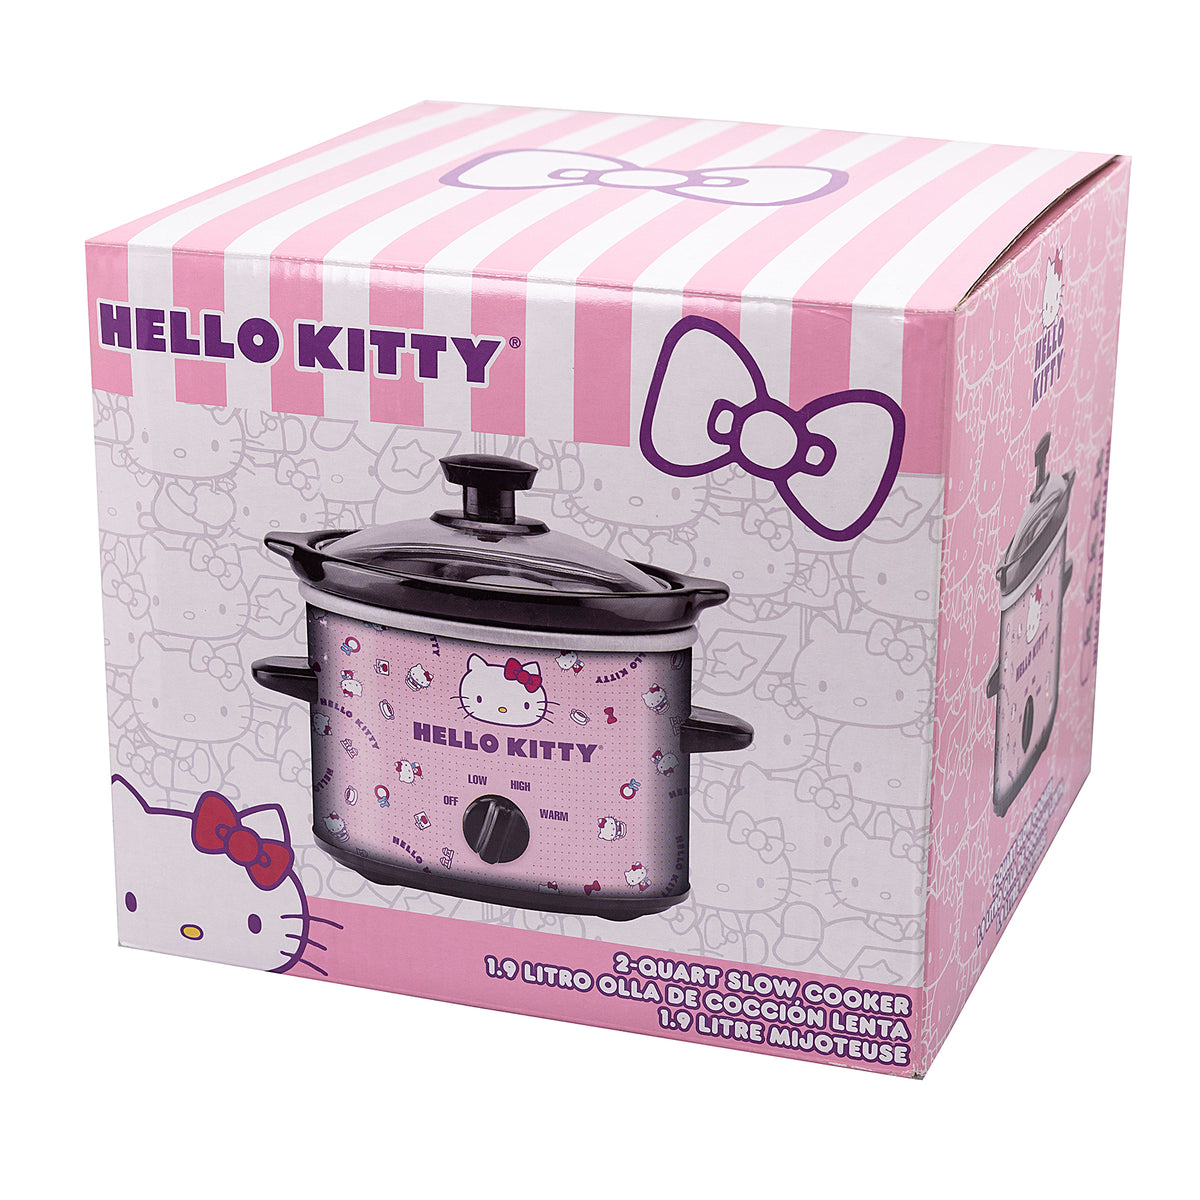 Hello Kitty Rice Cooker